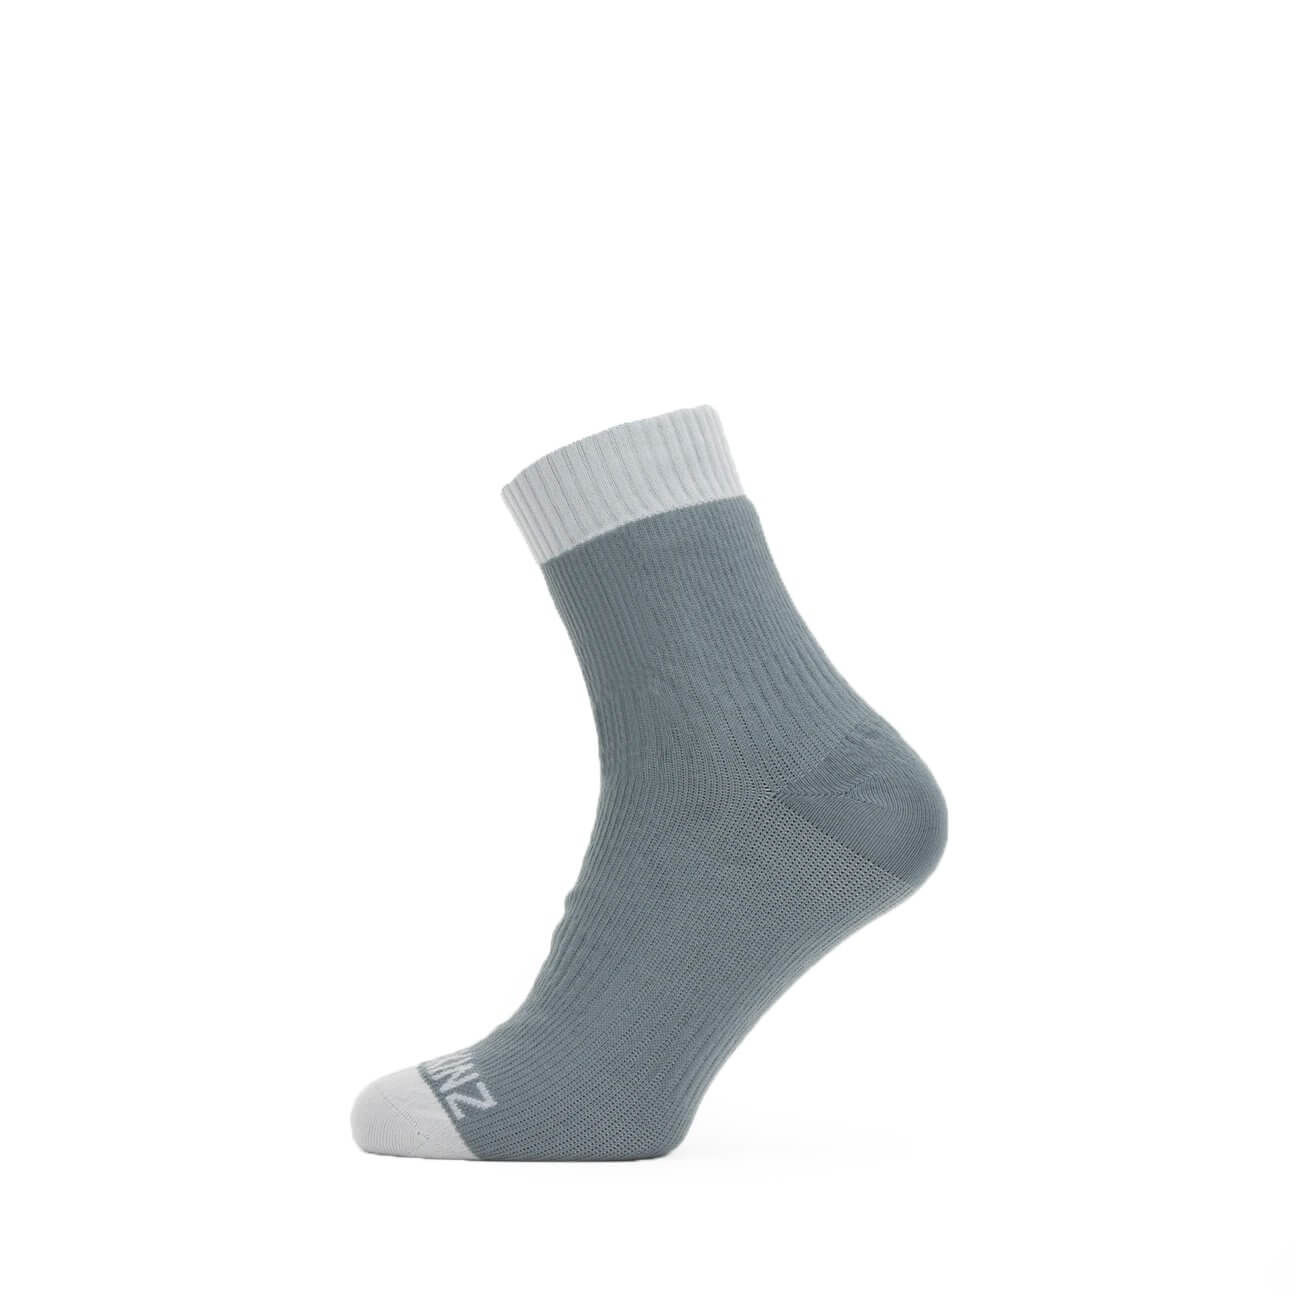 Sealskinz Waterproof Warm Weather Ankle Sock in Grey